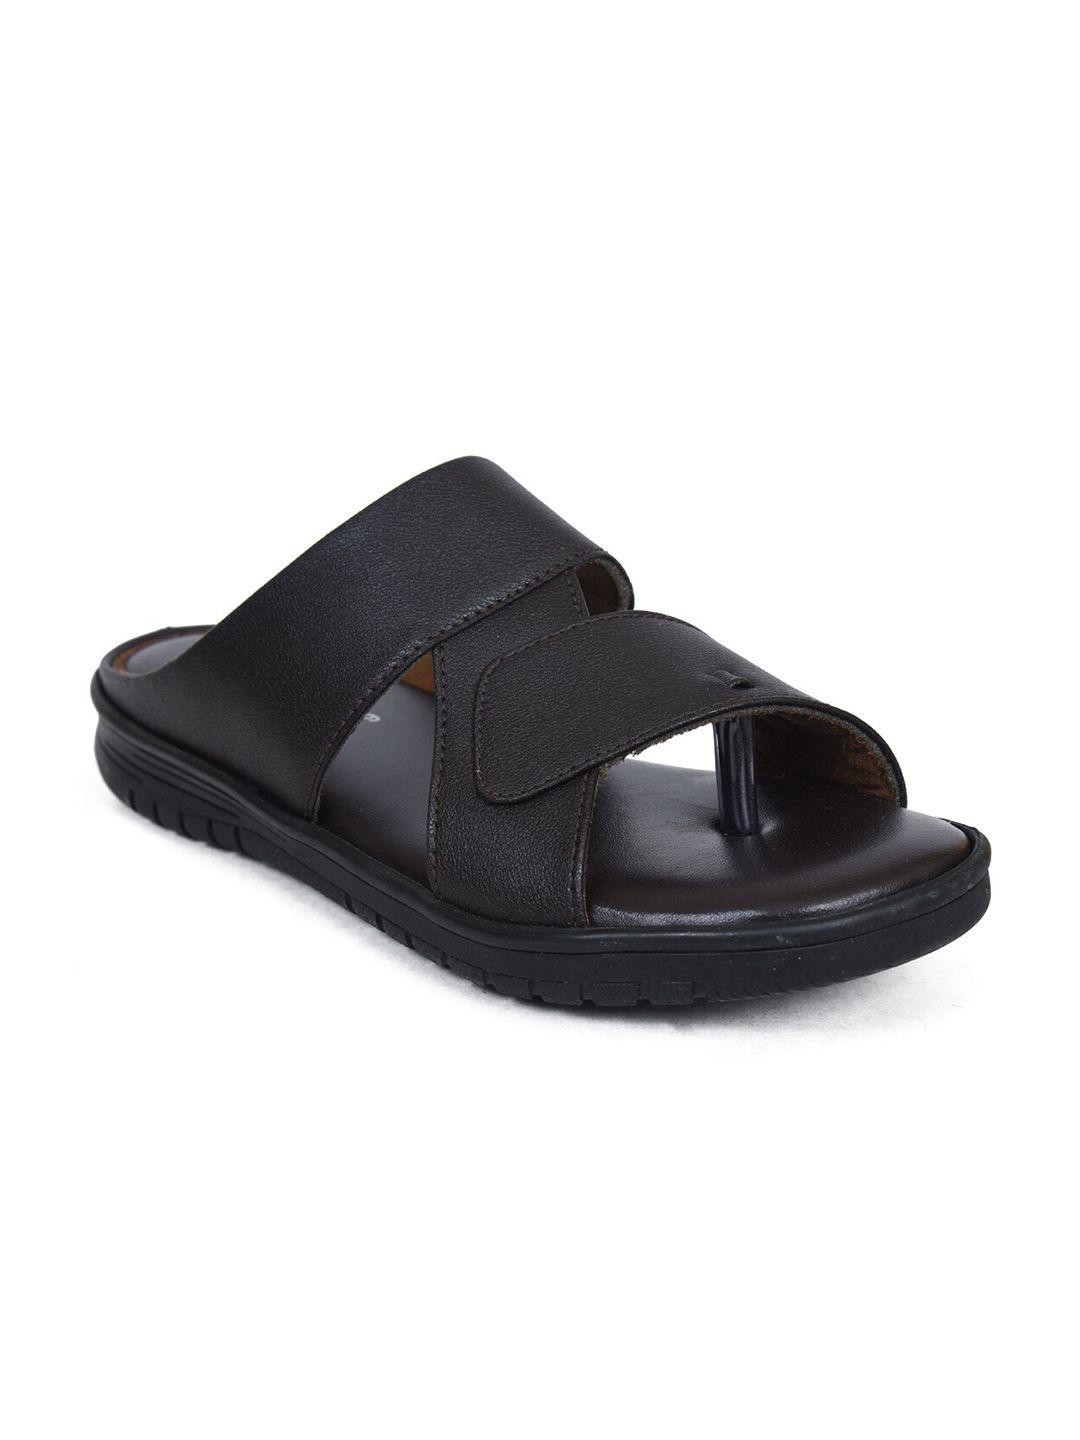 ajanta-men-brown-comfort-sandals